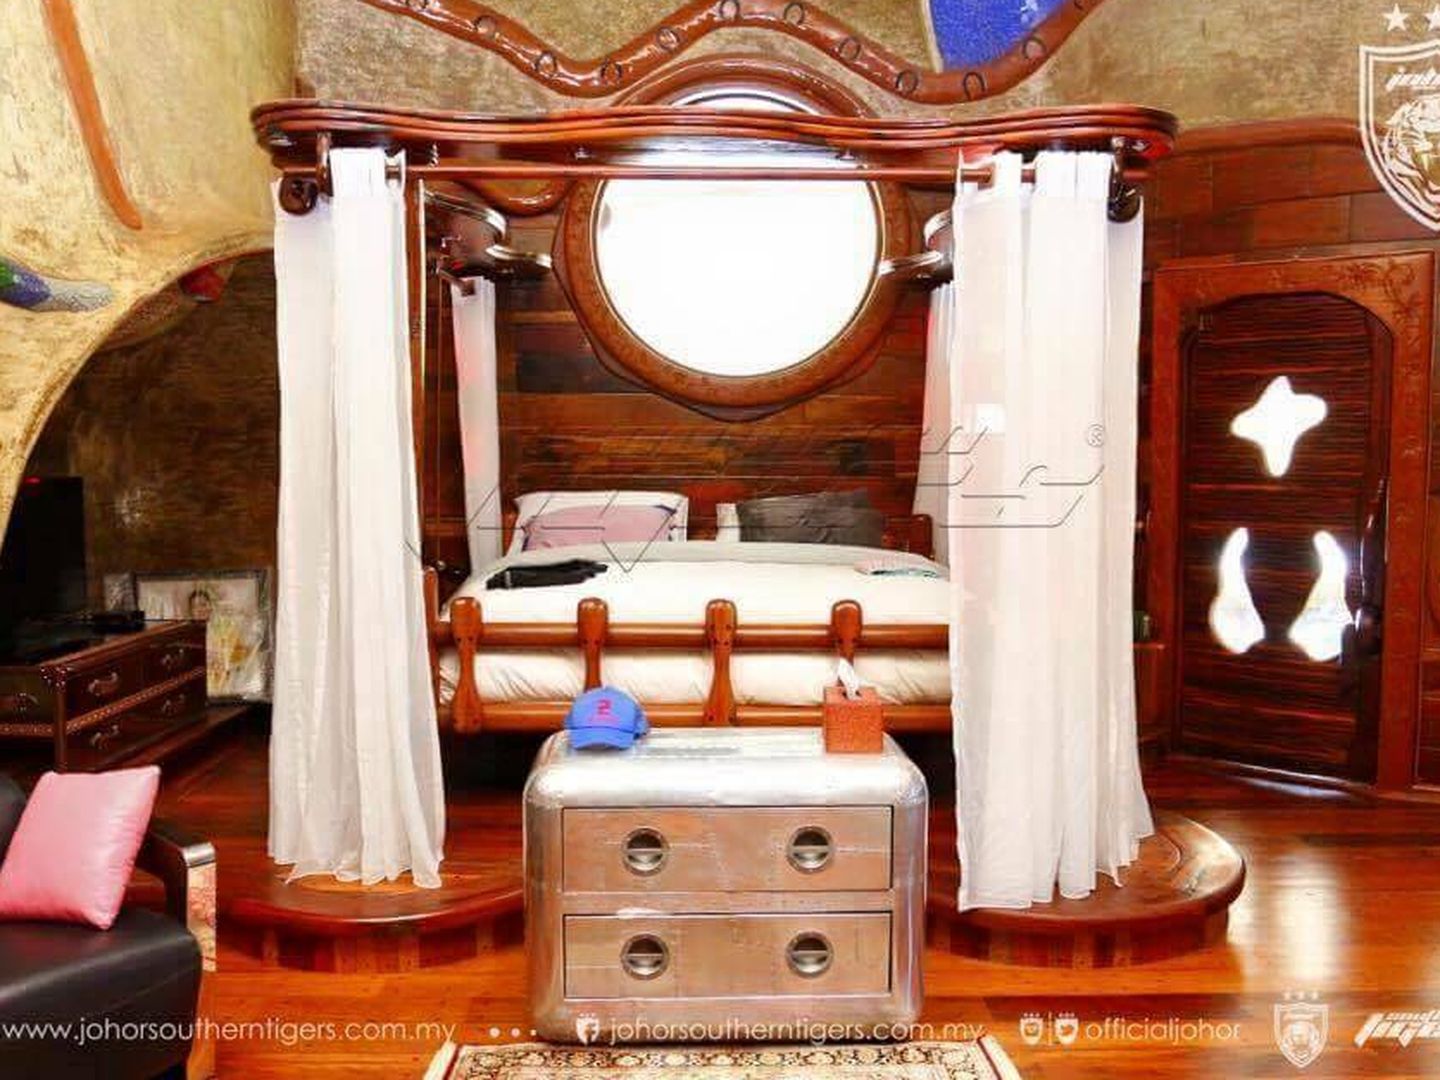 Dormitorio en el palacio Istana Mersing. (johorsoutherntigers.com.my)